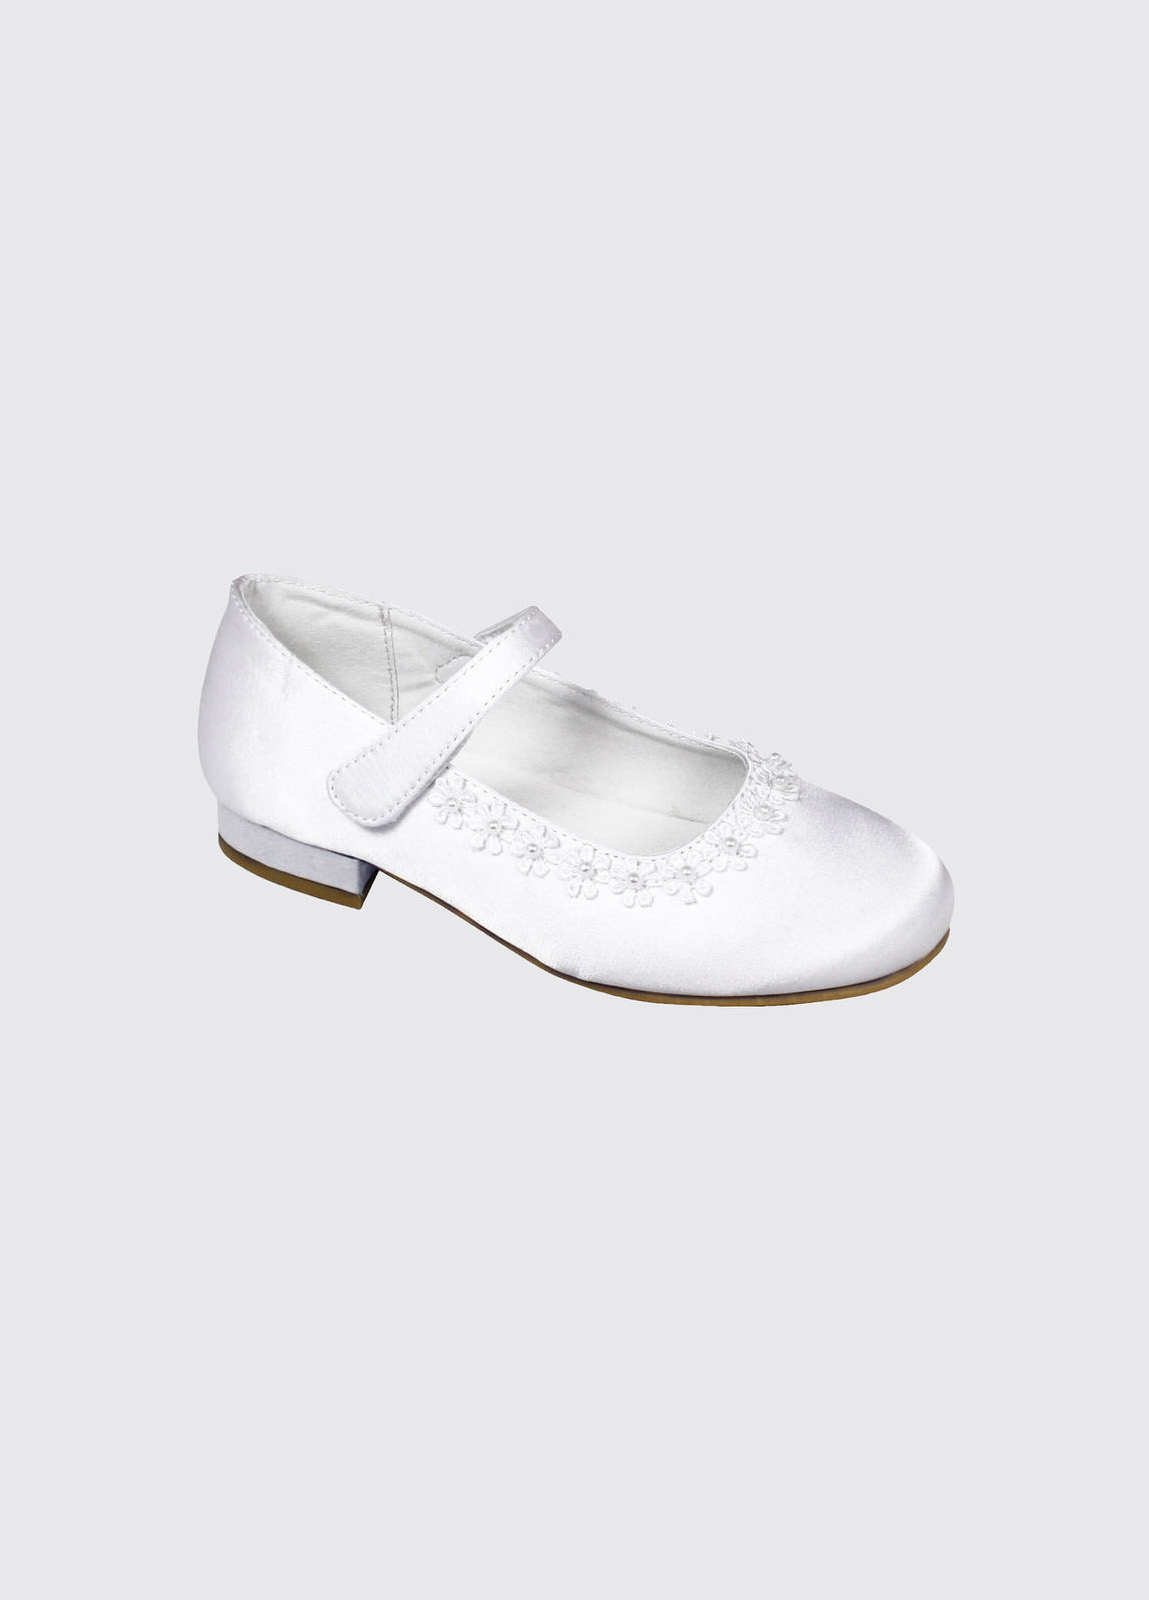 Vivienne Communion Shoe - White Satin